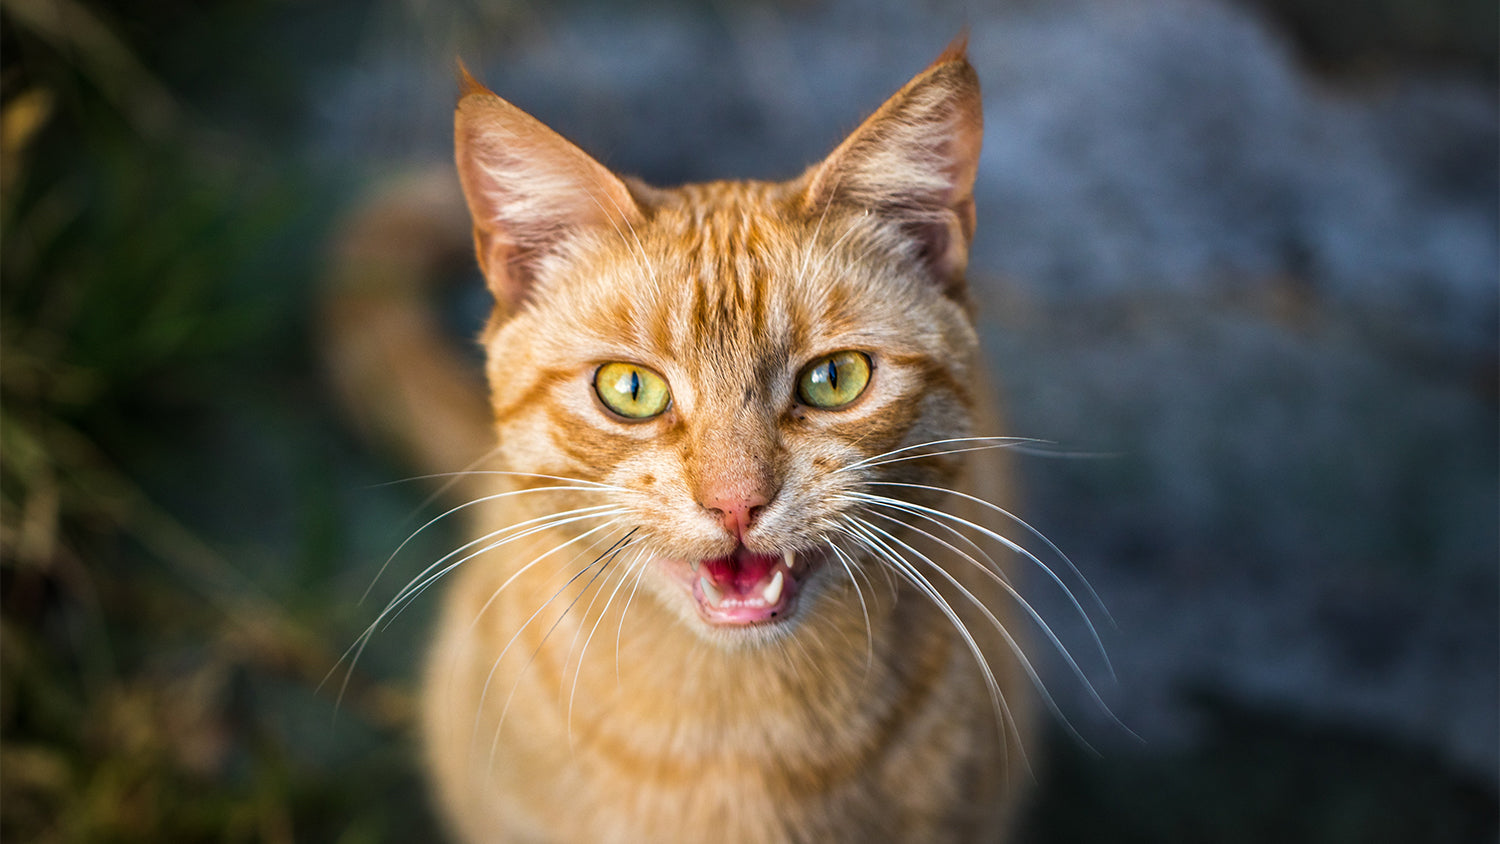 Eine Katze schaut einen direkt an und hat den Mund leicht geöffnet, sodass man die Zähne sieht.